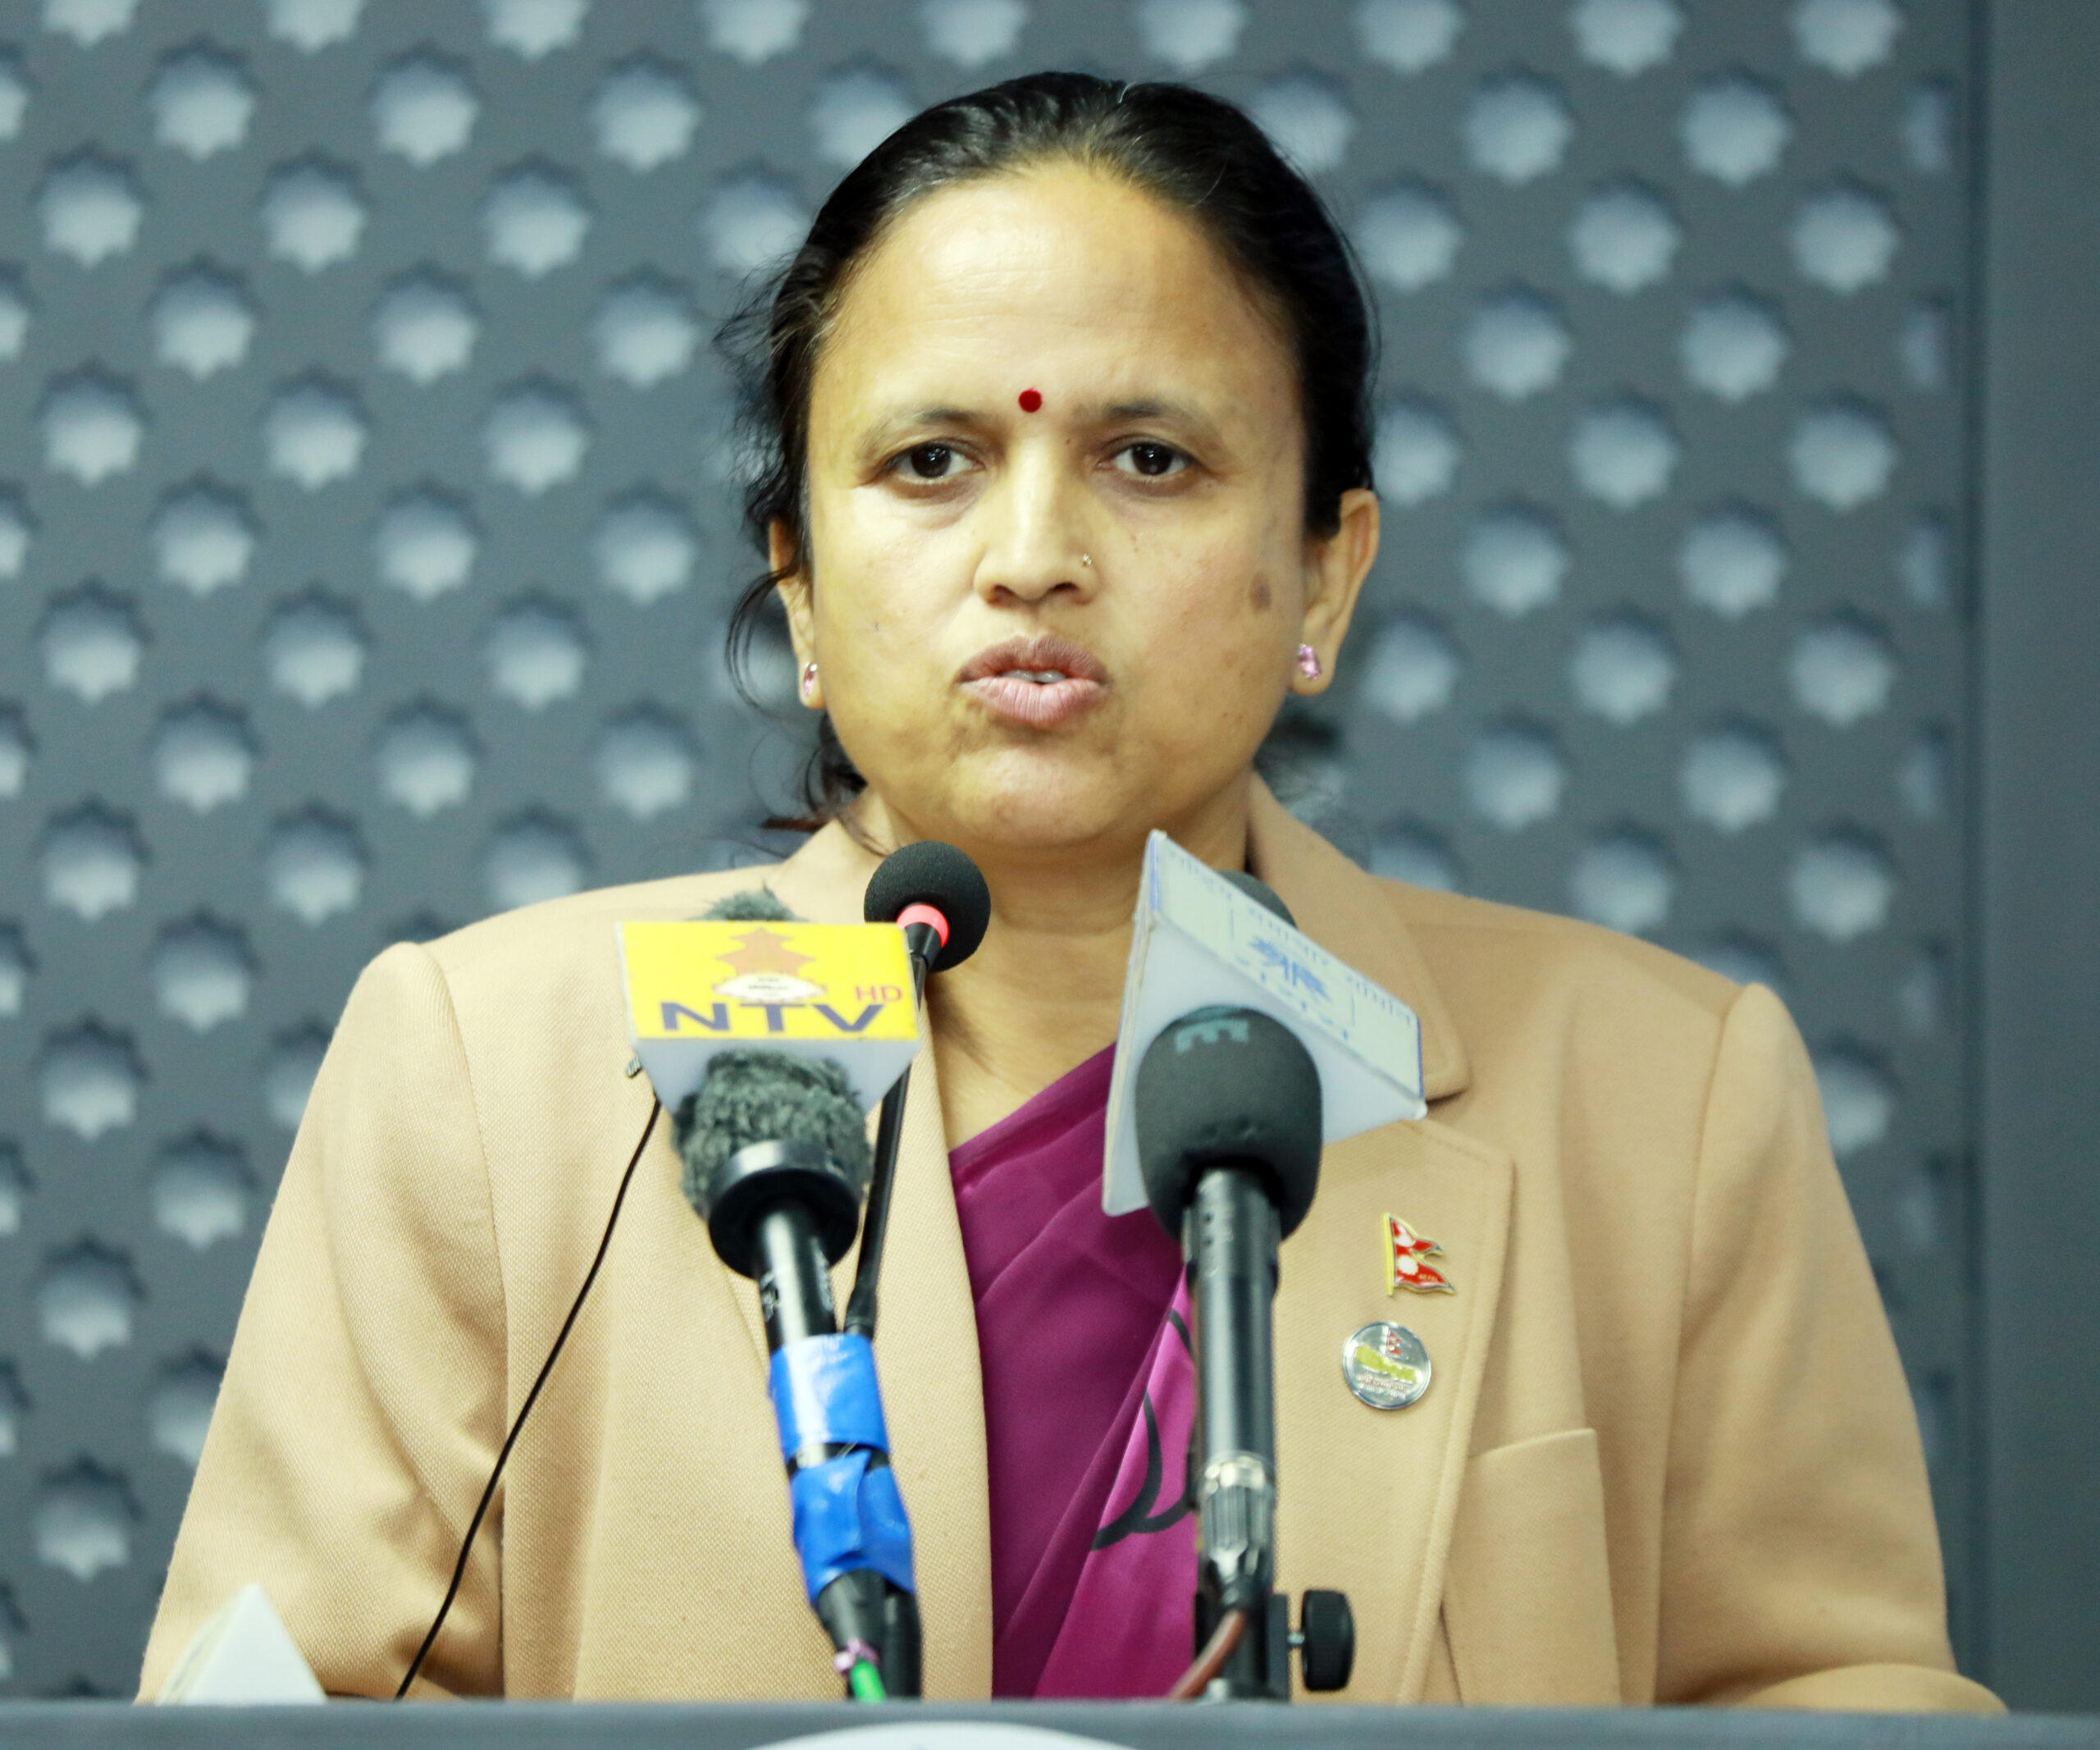 संक्रमणकालिन न्यायसँग सम्बन्धित विधेयकप्रति असहमति जनाउनु शान्ति प्रक्रिया बिरुद्ध छ : मन्त्री शर्मा